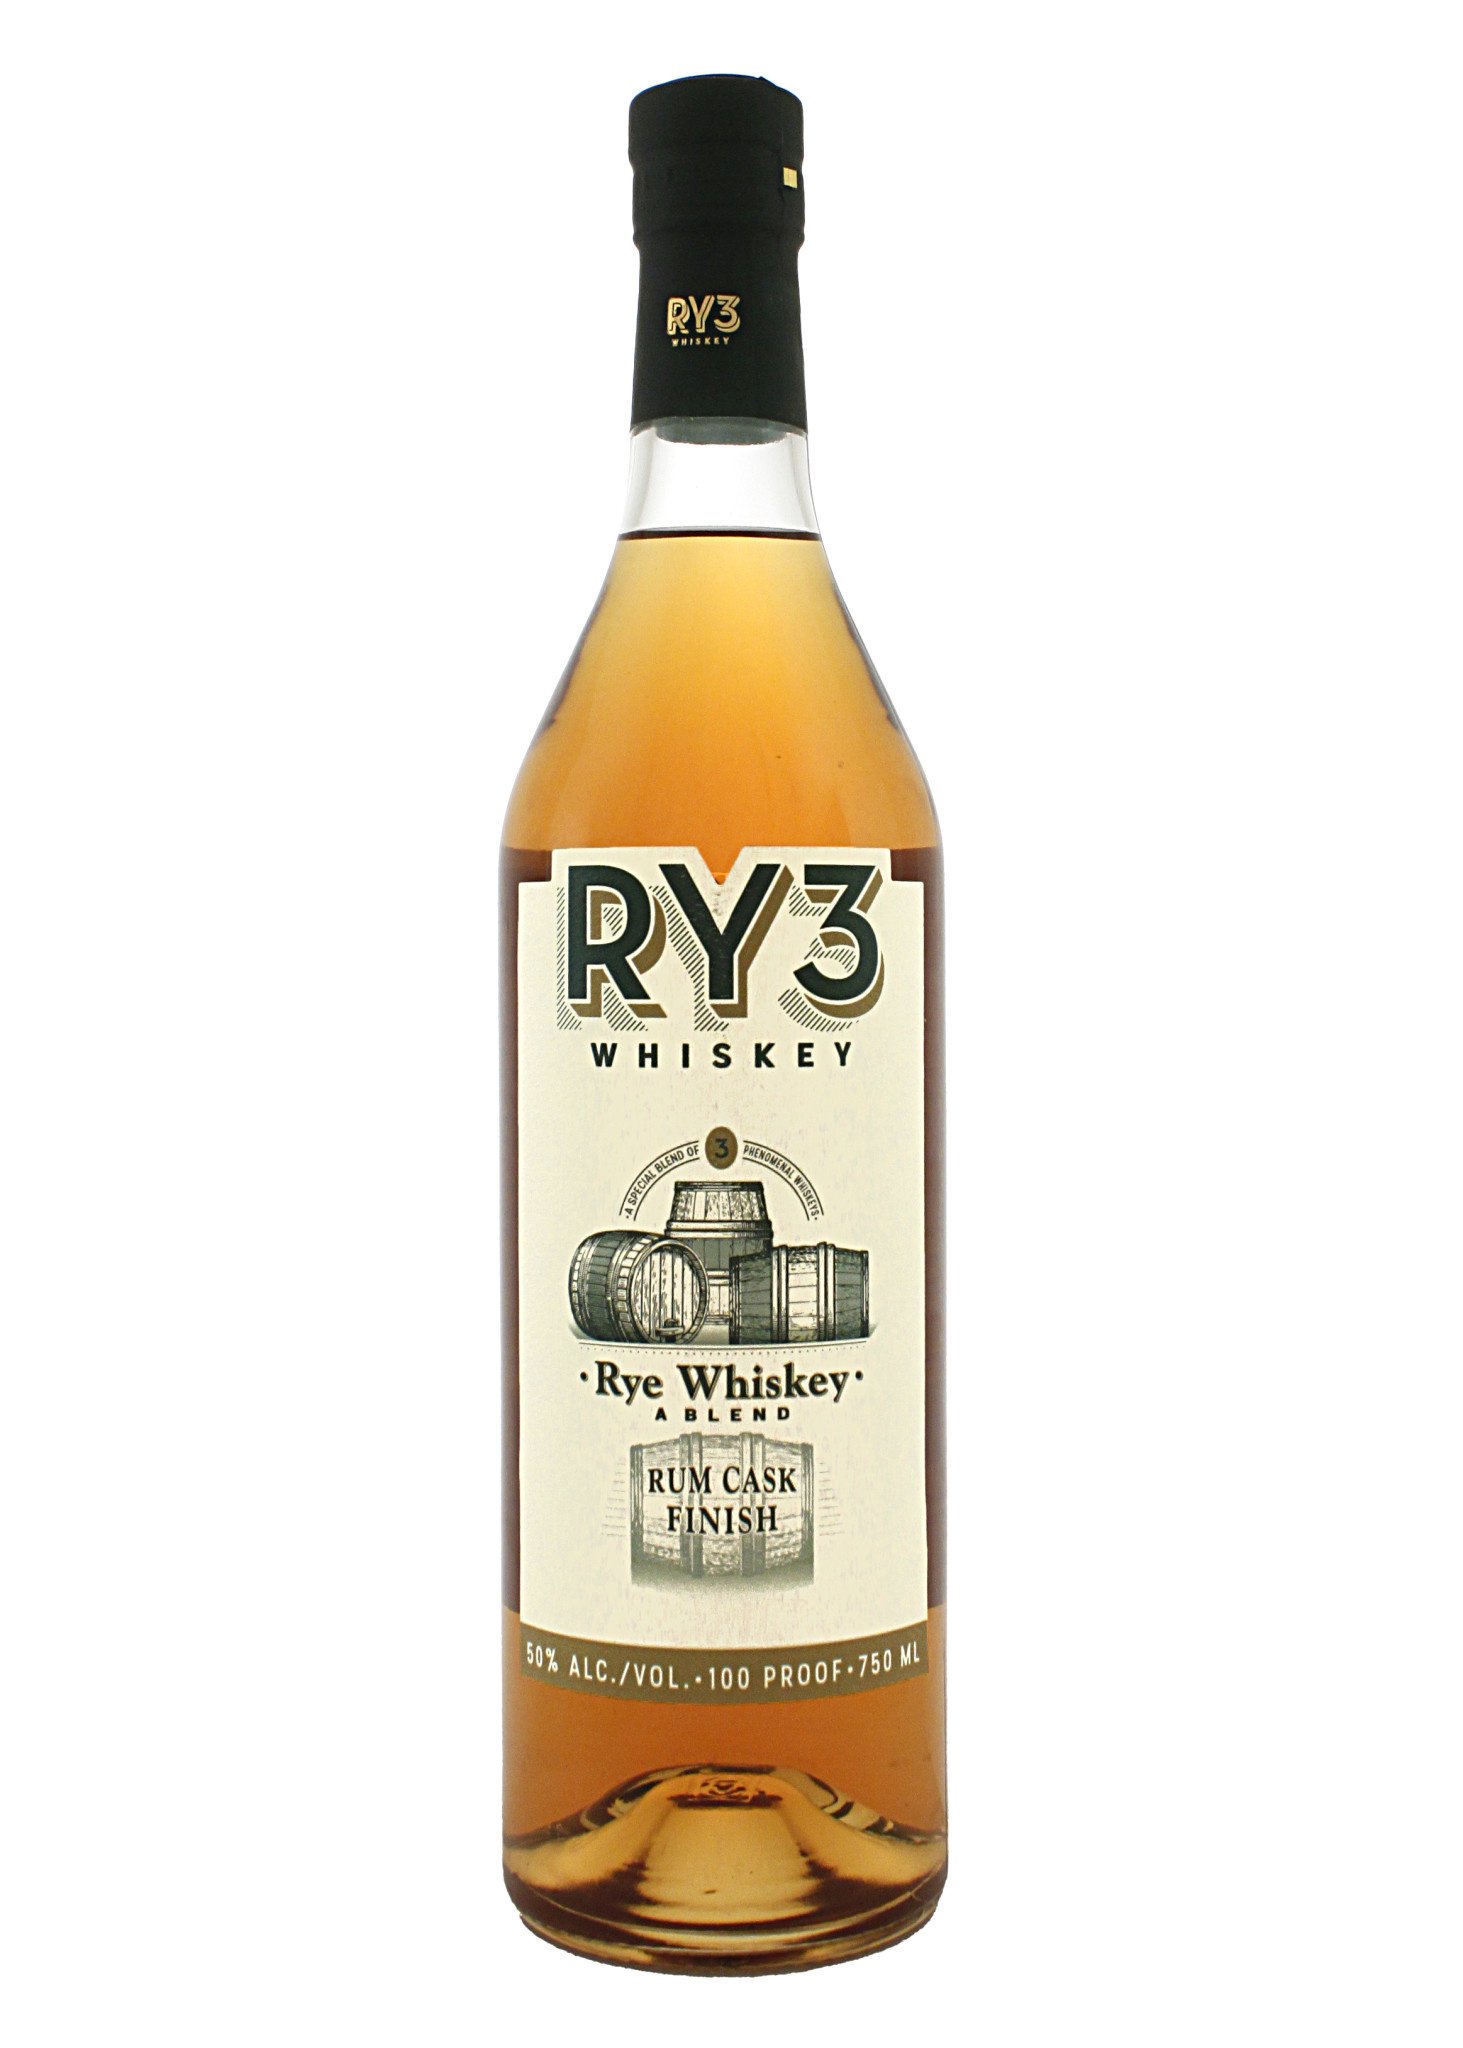 RY3 Whiskey Rye Whiskey Rum Cask Finish, Virginia Beach, Virginia - The  Wine Country